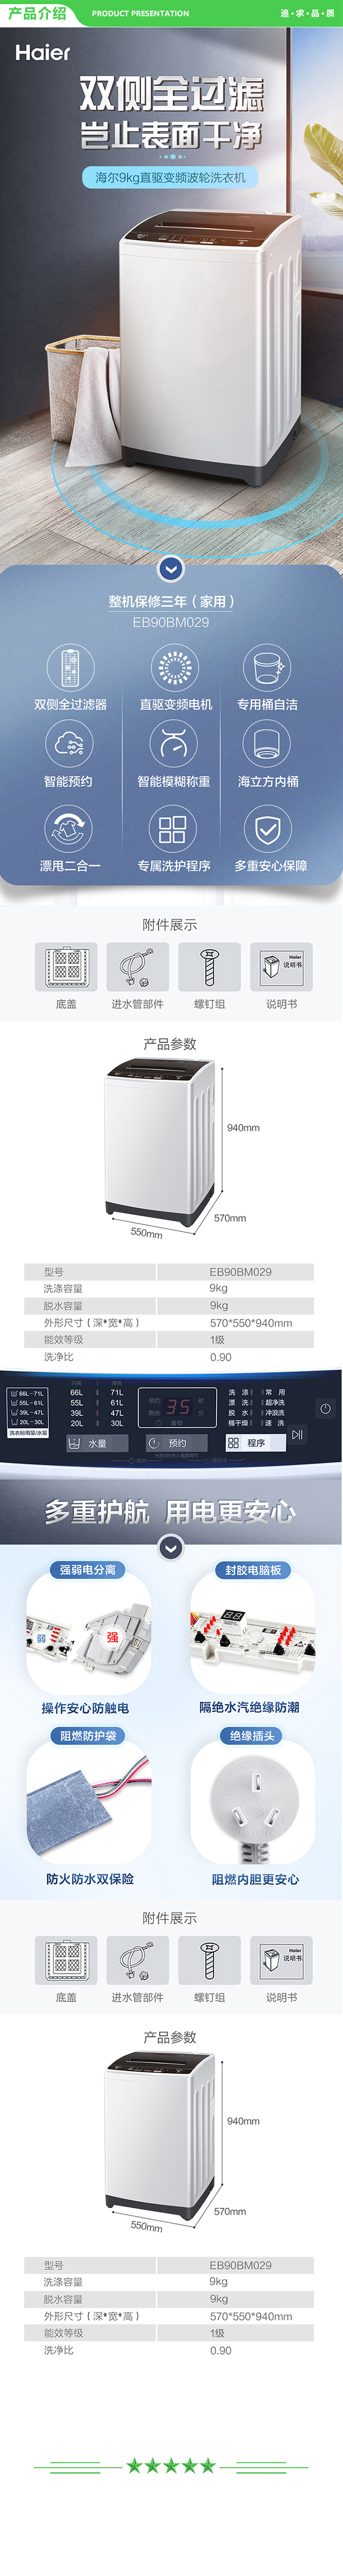 海尔-Haier-EB90BM029--变频波轮洗衣机全自动-以旧换新-智能称重量衣进水-健康桶自洁-9KG大容量-.jpg